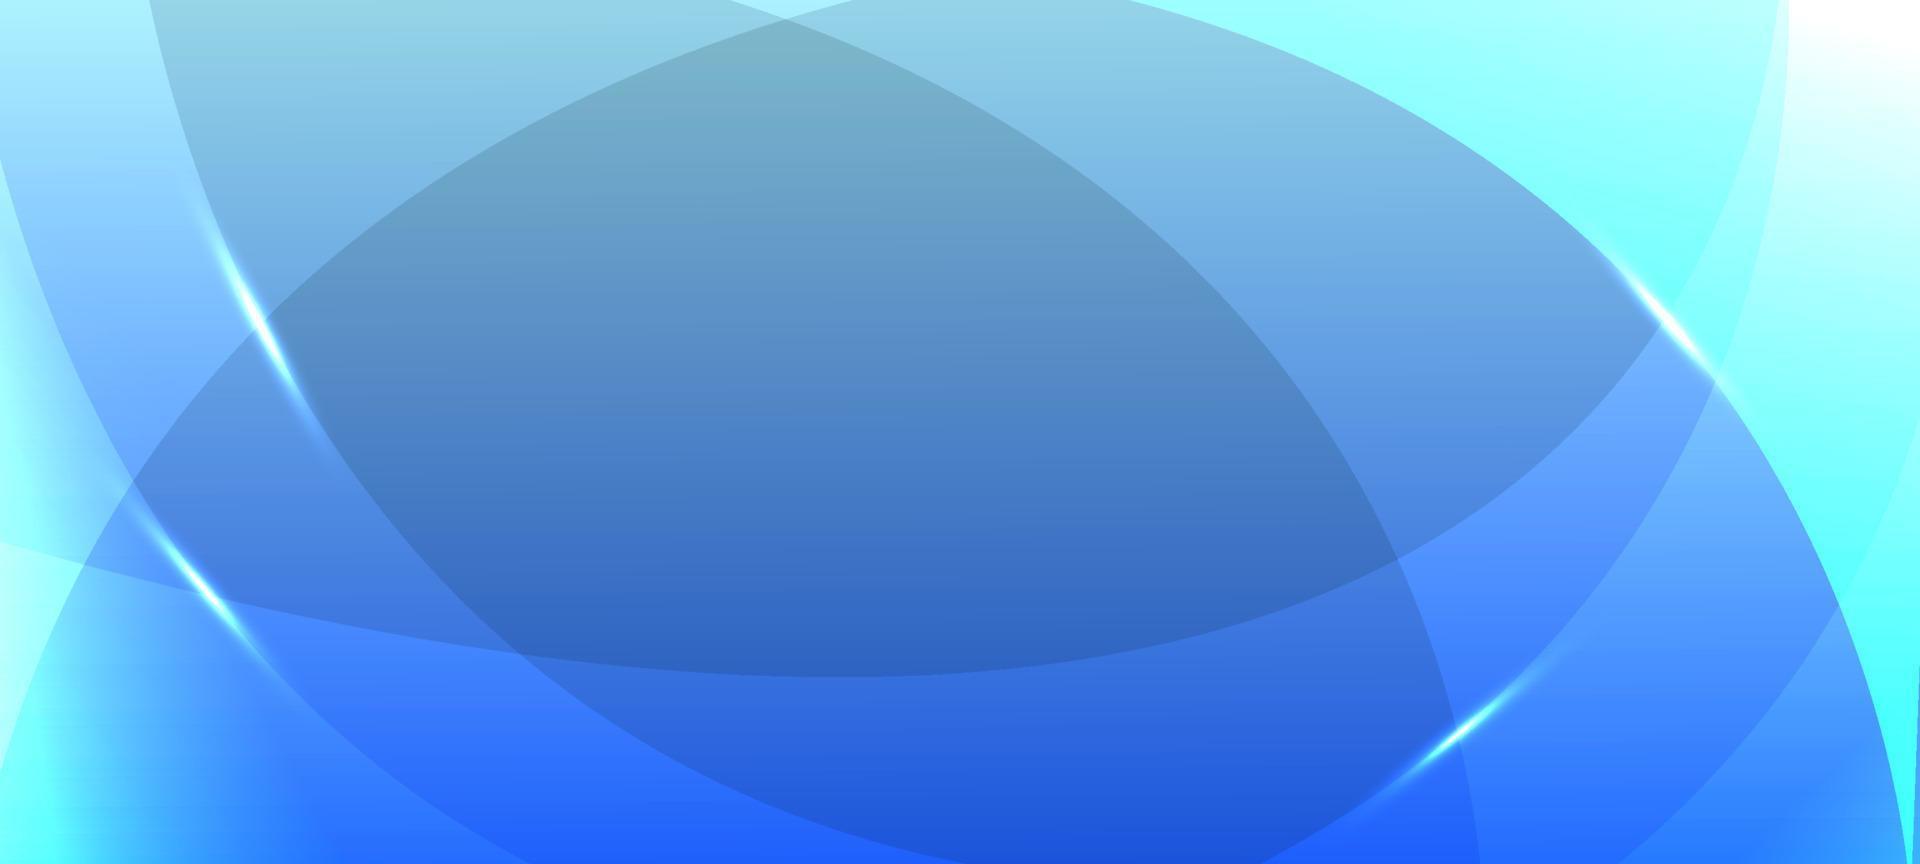 Subtle Gradient Blue Background vector